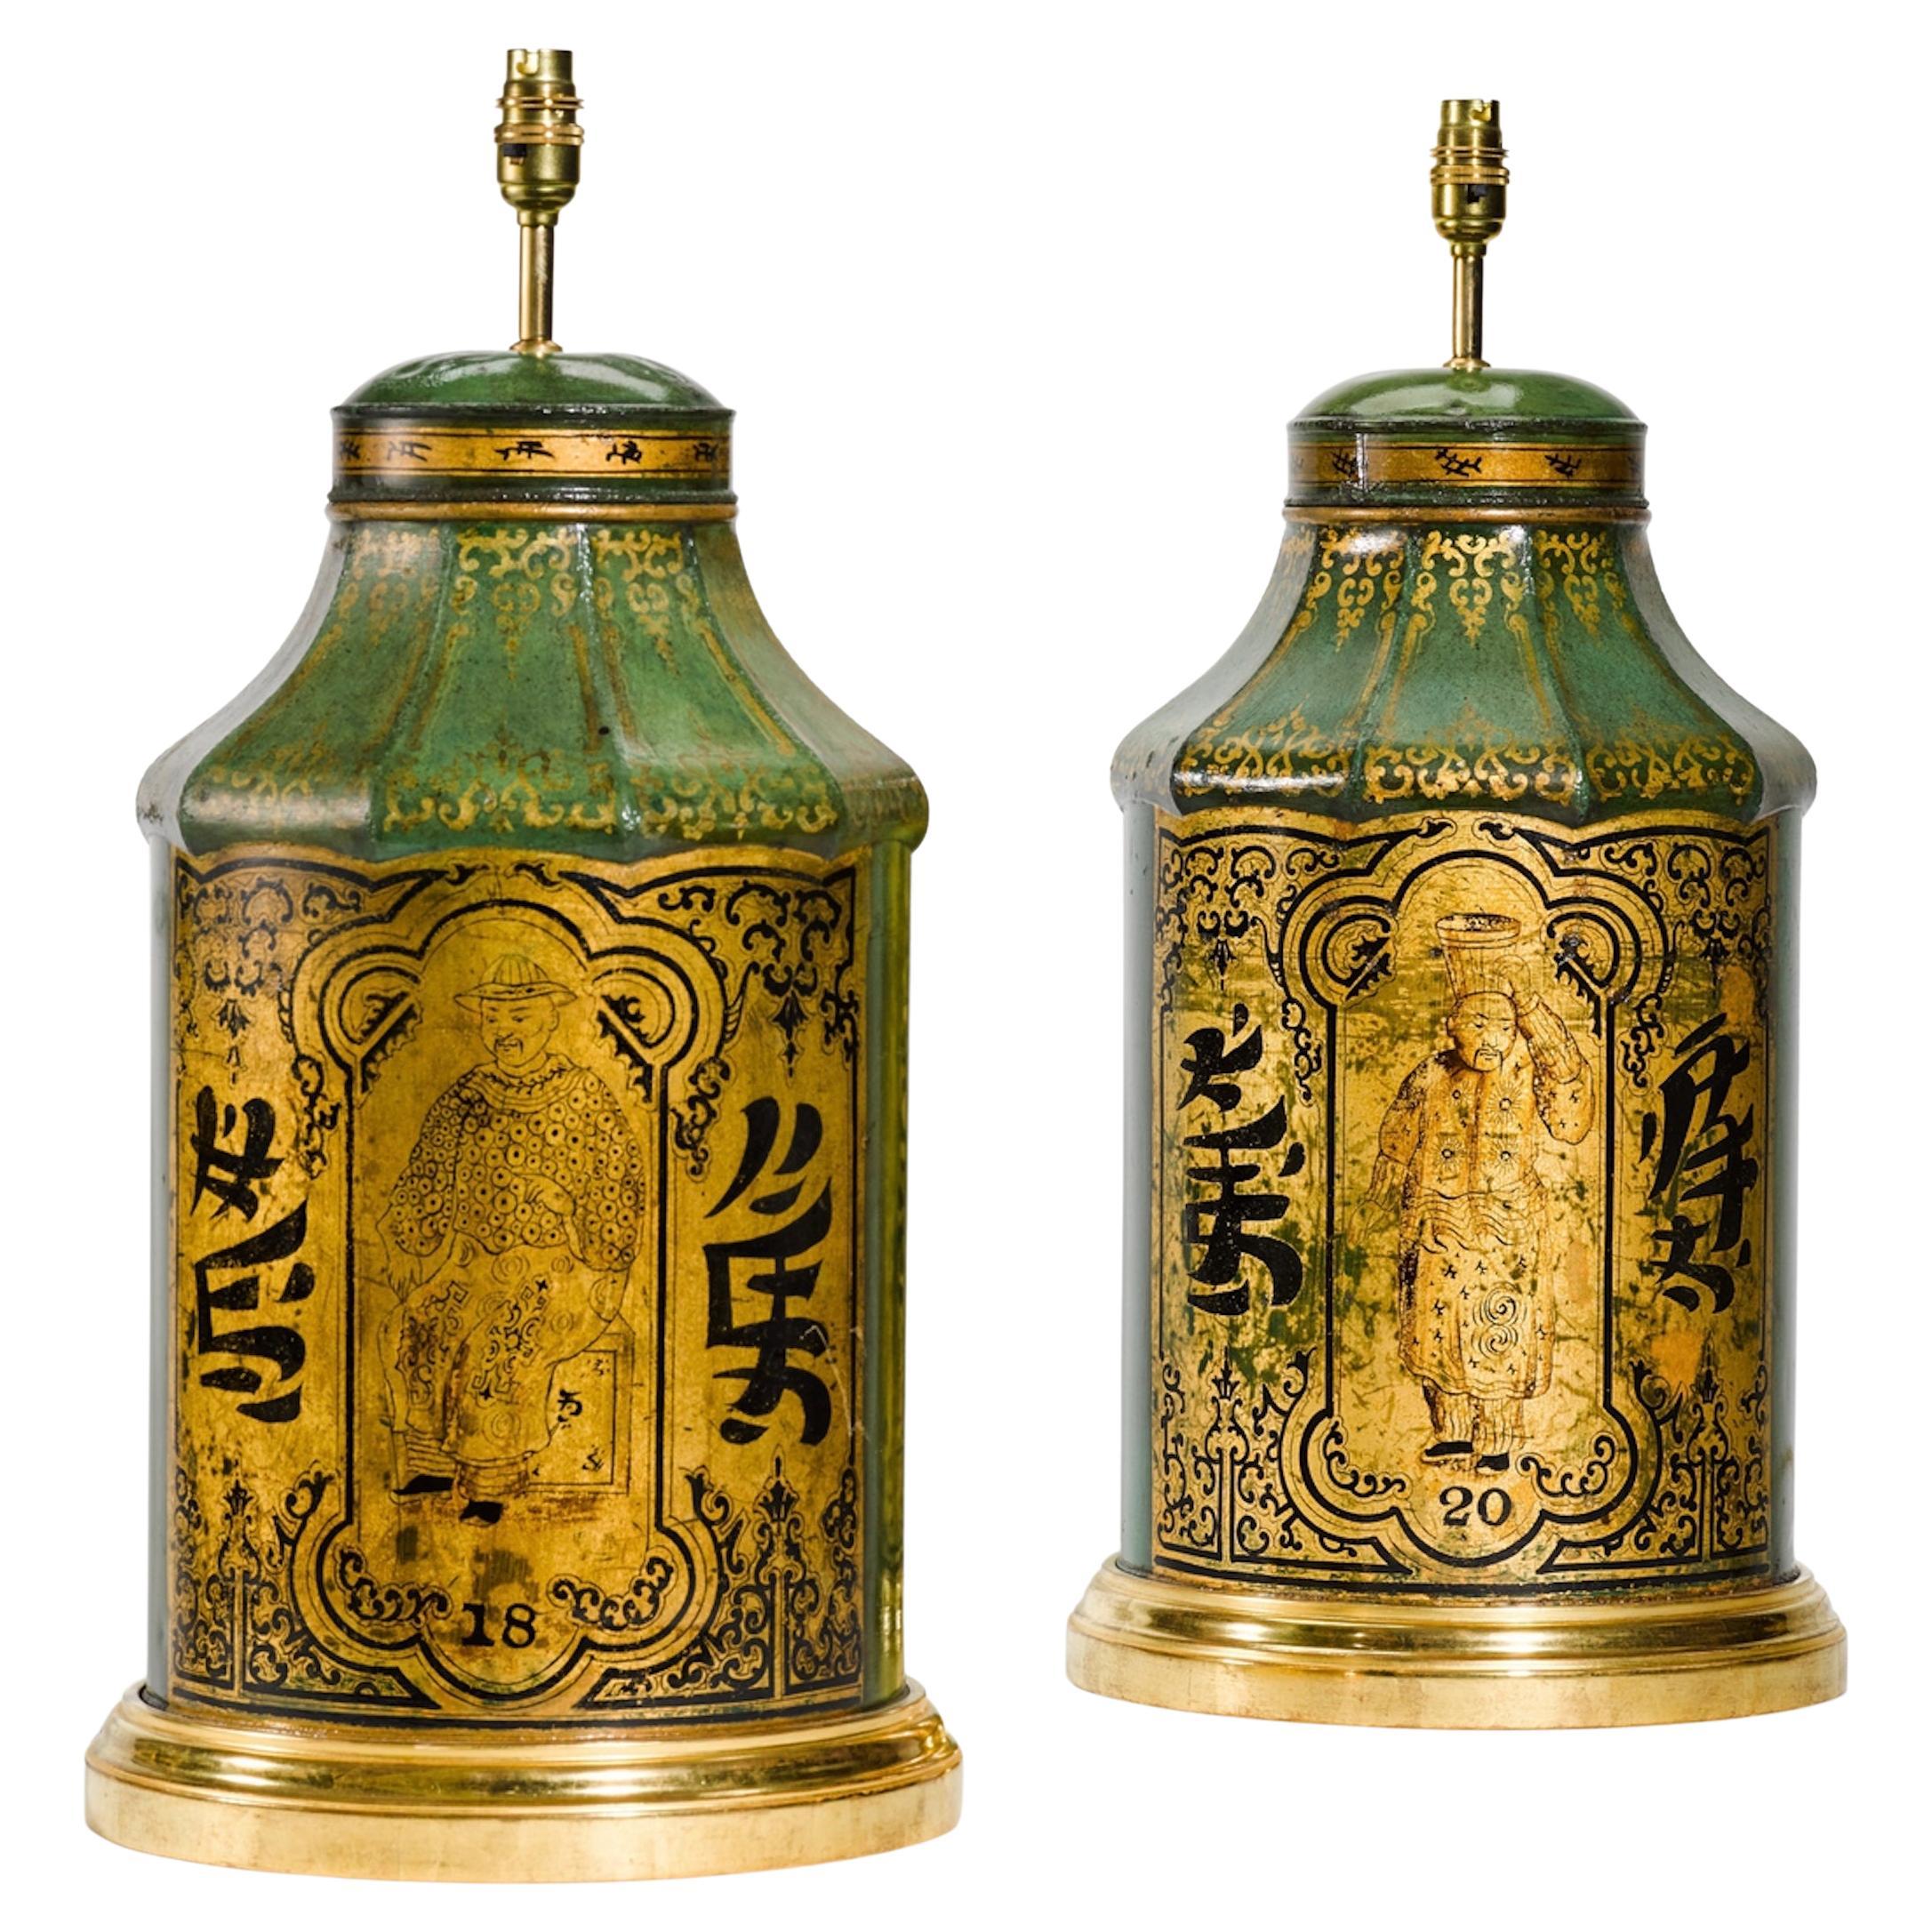 Paire de lampes de table anciennes en forme de boîte à thé du 19e siècle, or et vert